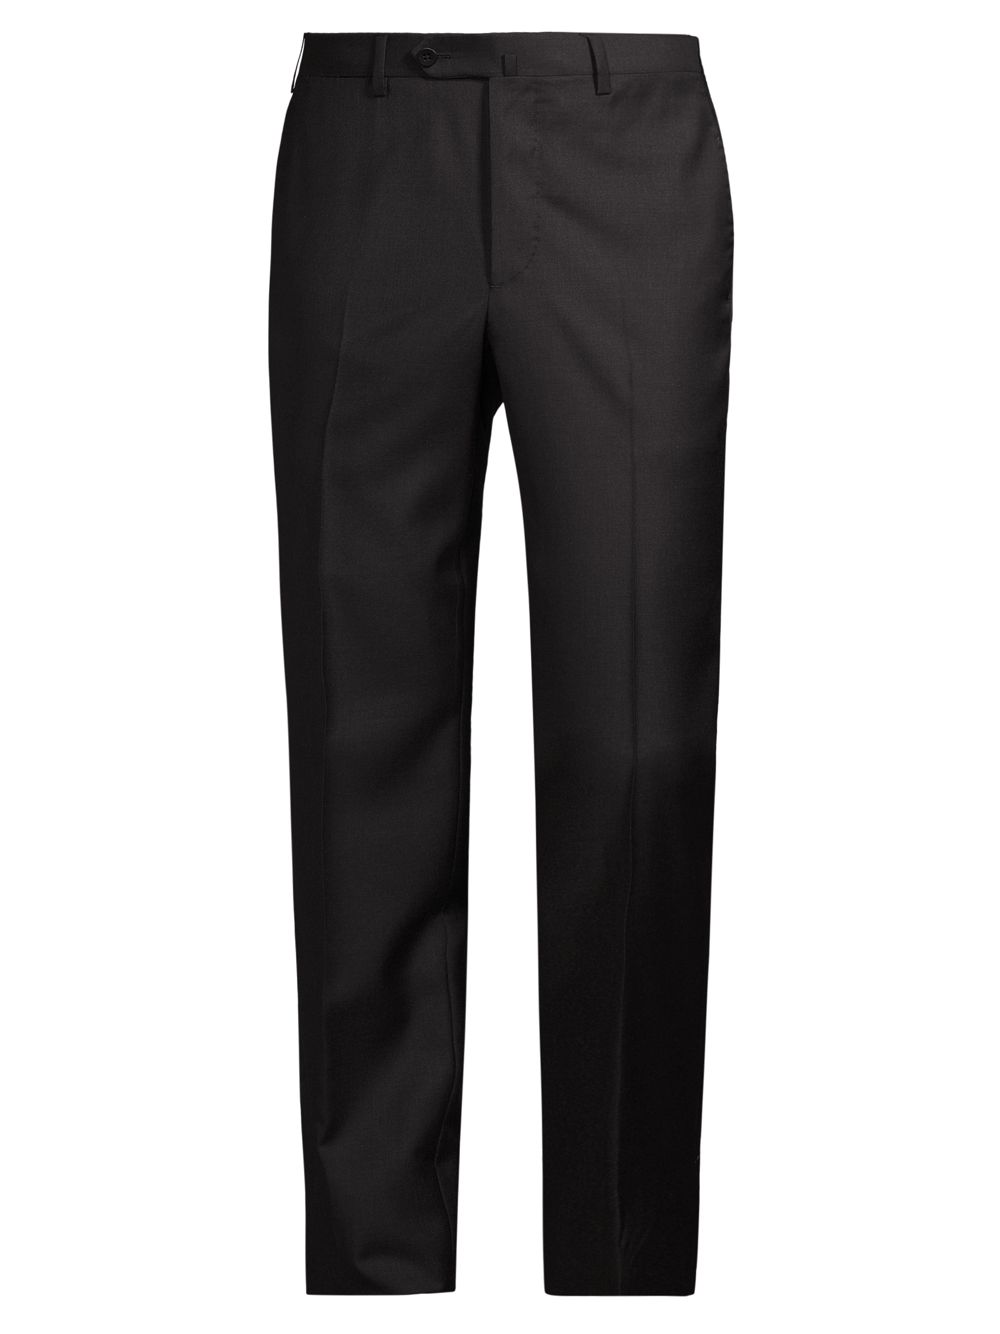 Шерстяные классические брюки Sanita Isaia, угольный брюки шерстяные классические 46 размер